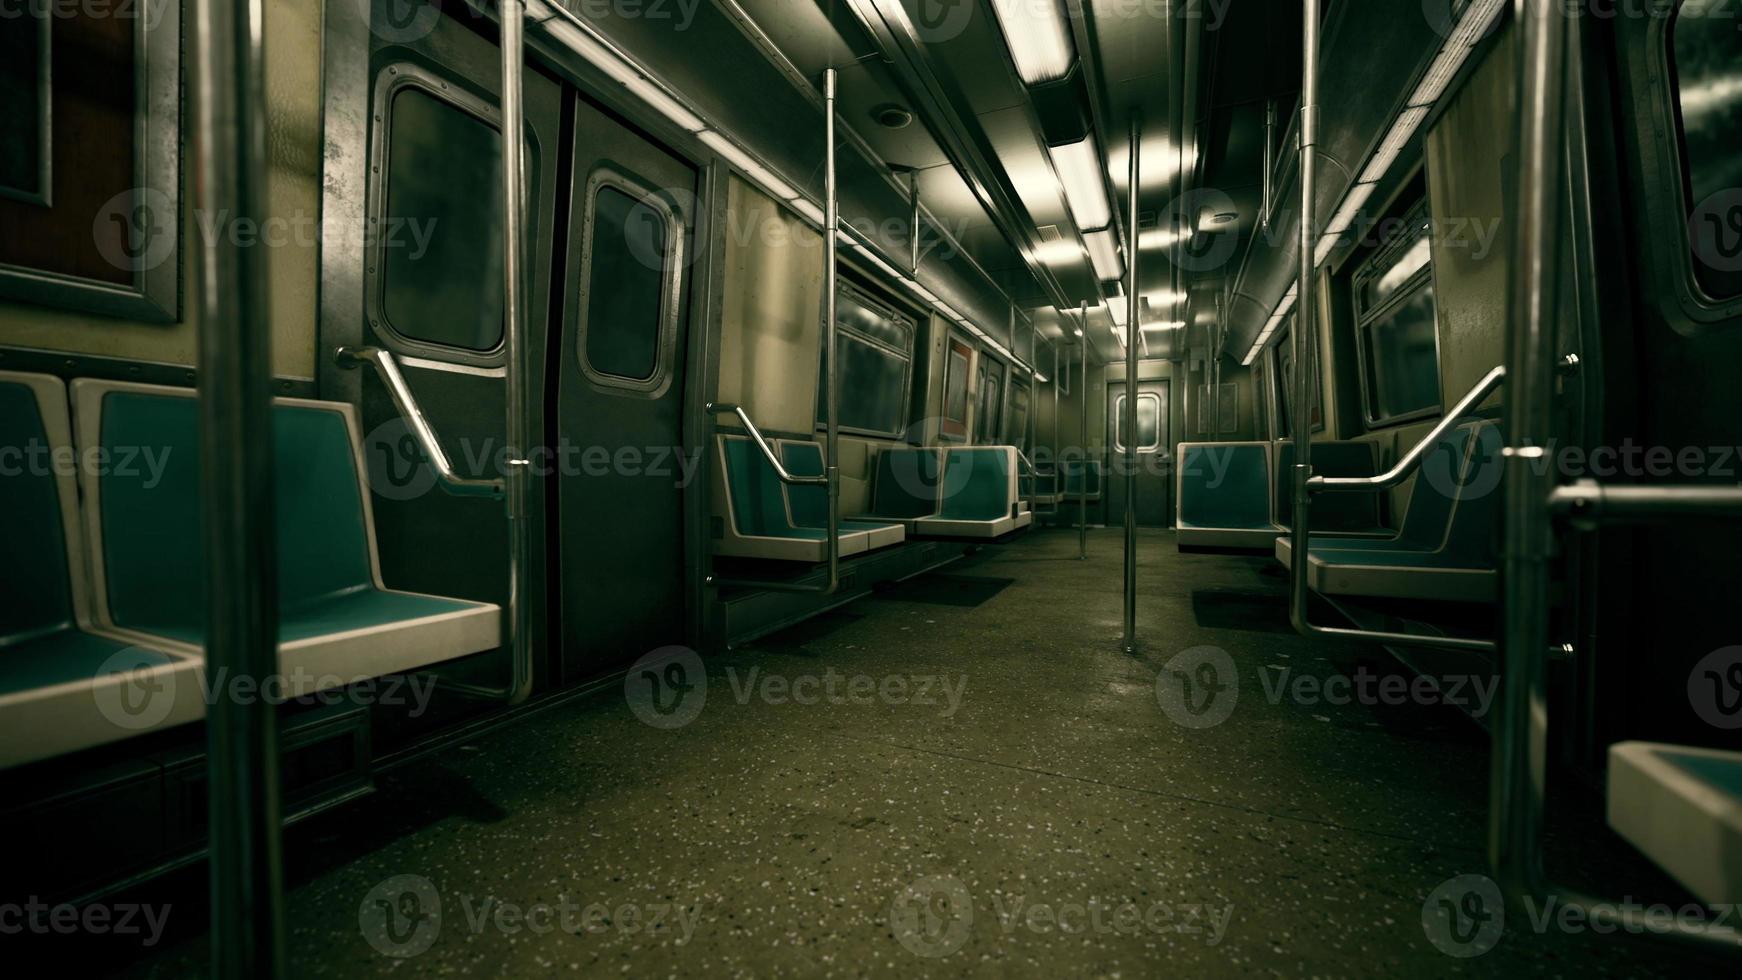 leere Bänke des U-Bahn-Wagens foto